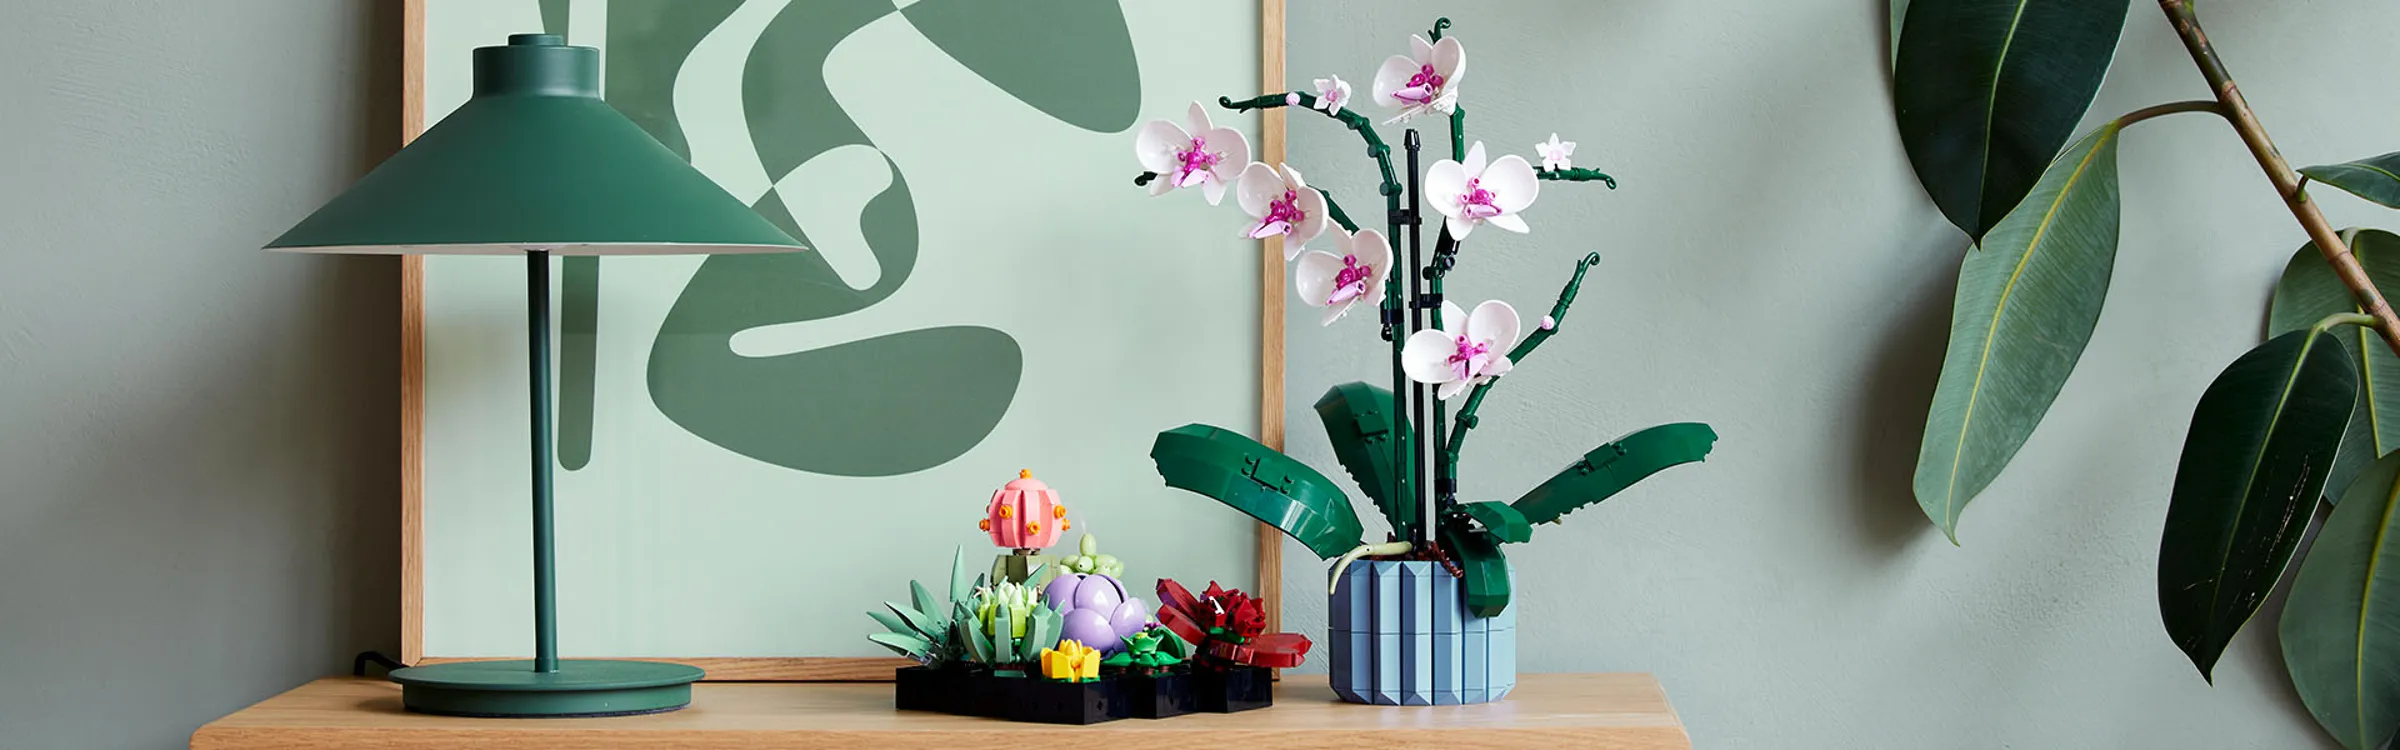 Orchidea e Piante Grasse i nuovissimi set della Lego per adulti -  TulipanoRosa